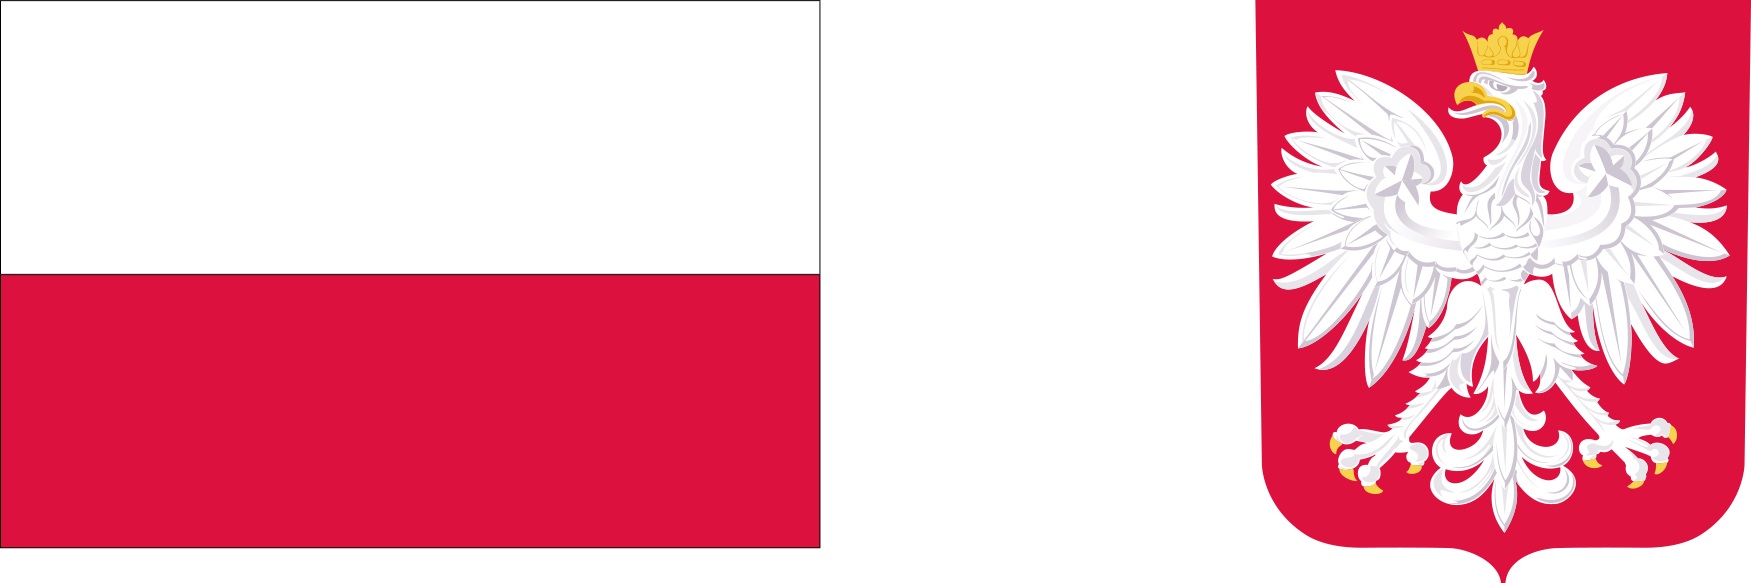 Logotypy zawierające barwy Rzeczypospolitej Polskiej i wizerunek godła Rzeczypospolitej Polskiej